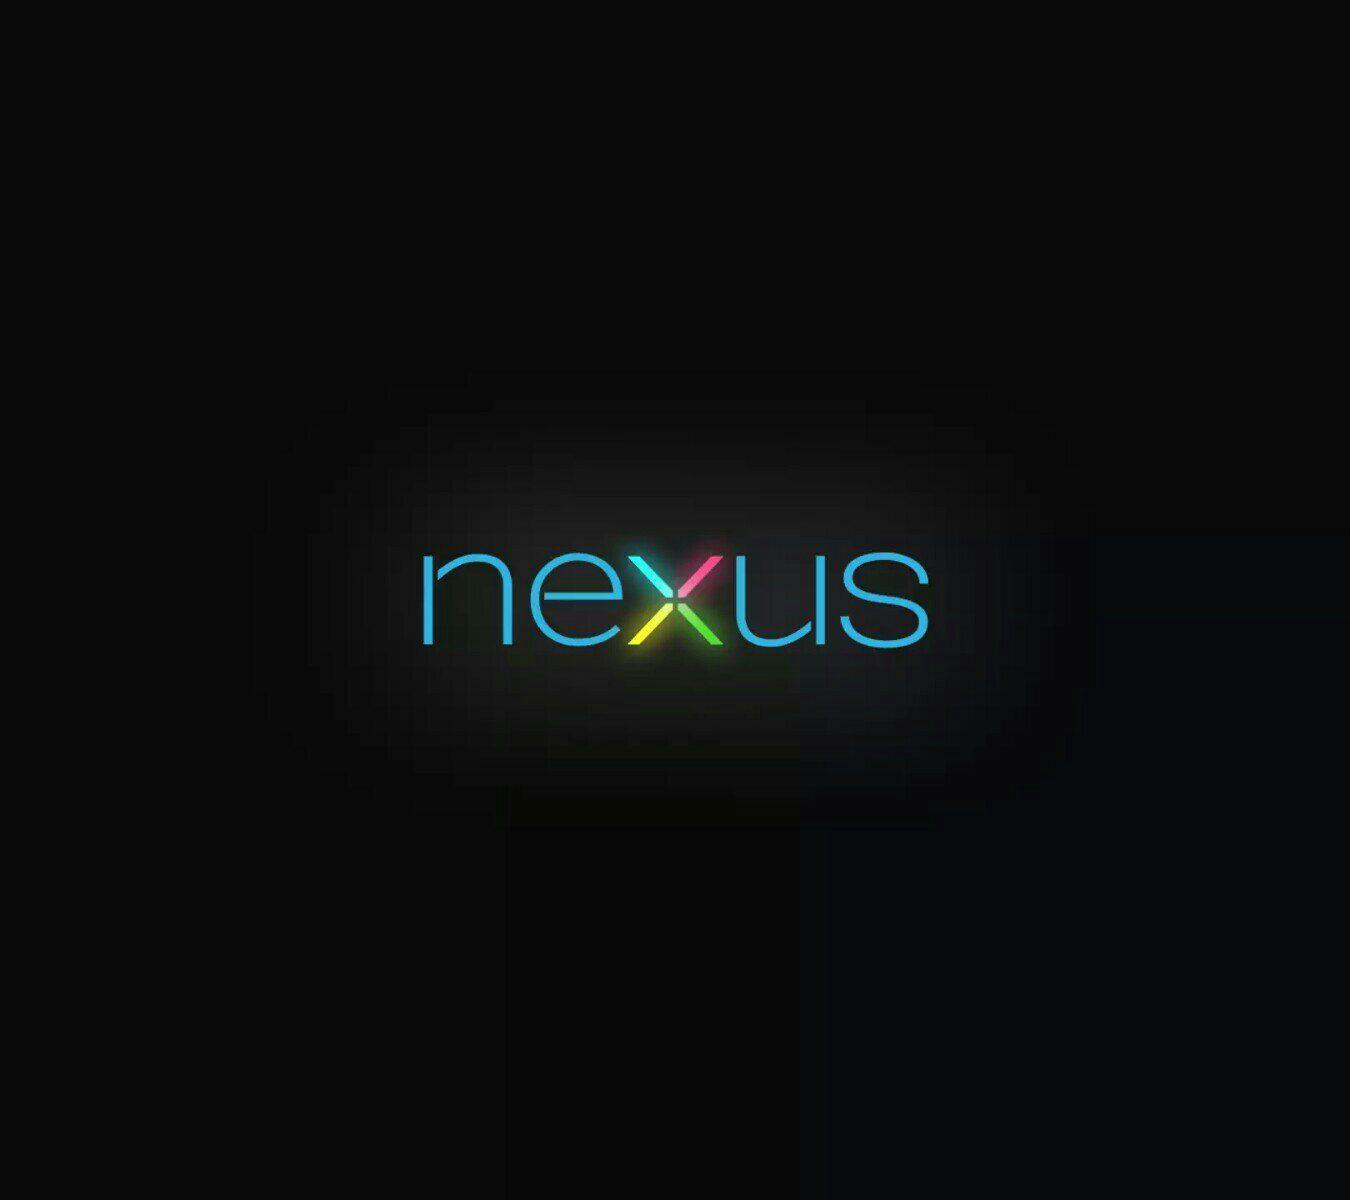 Top google nexus 5 stock HD wallpaper | Pxfuel